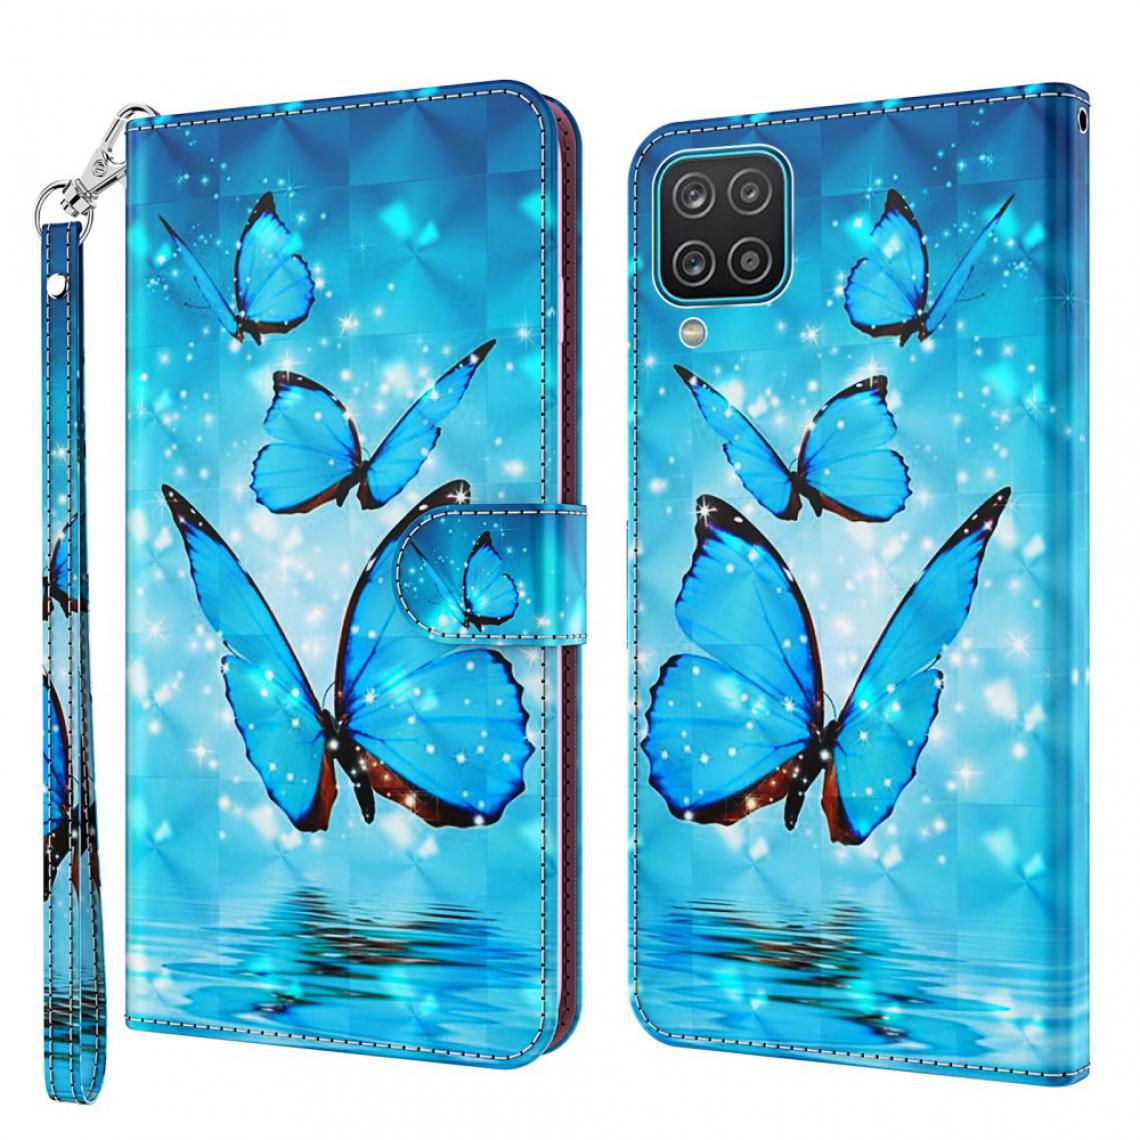 Other - Etui en PU impression de motifs avec support et cordon papillon bleu pour votre Samsung Galaxy A12 - Coque, étui smartphone